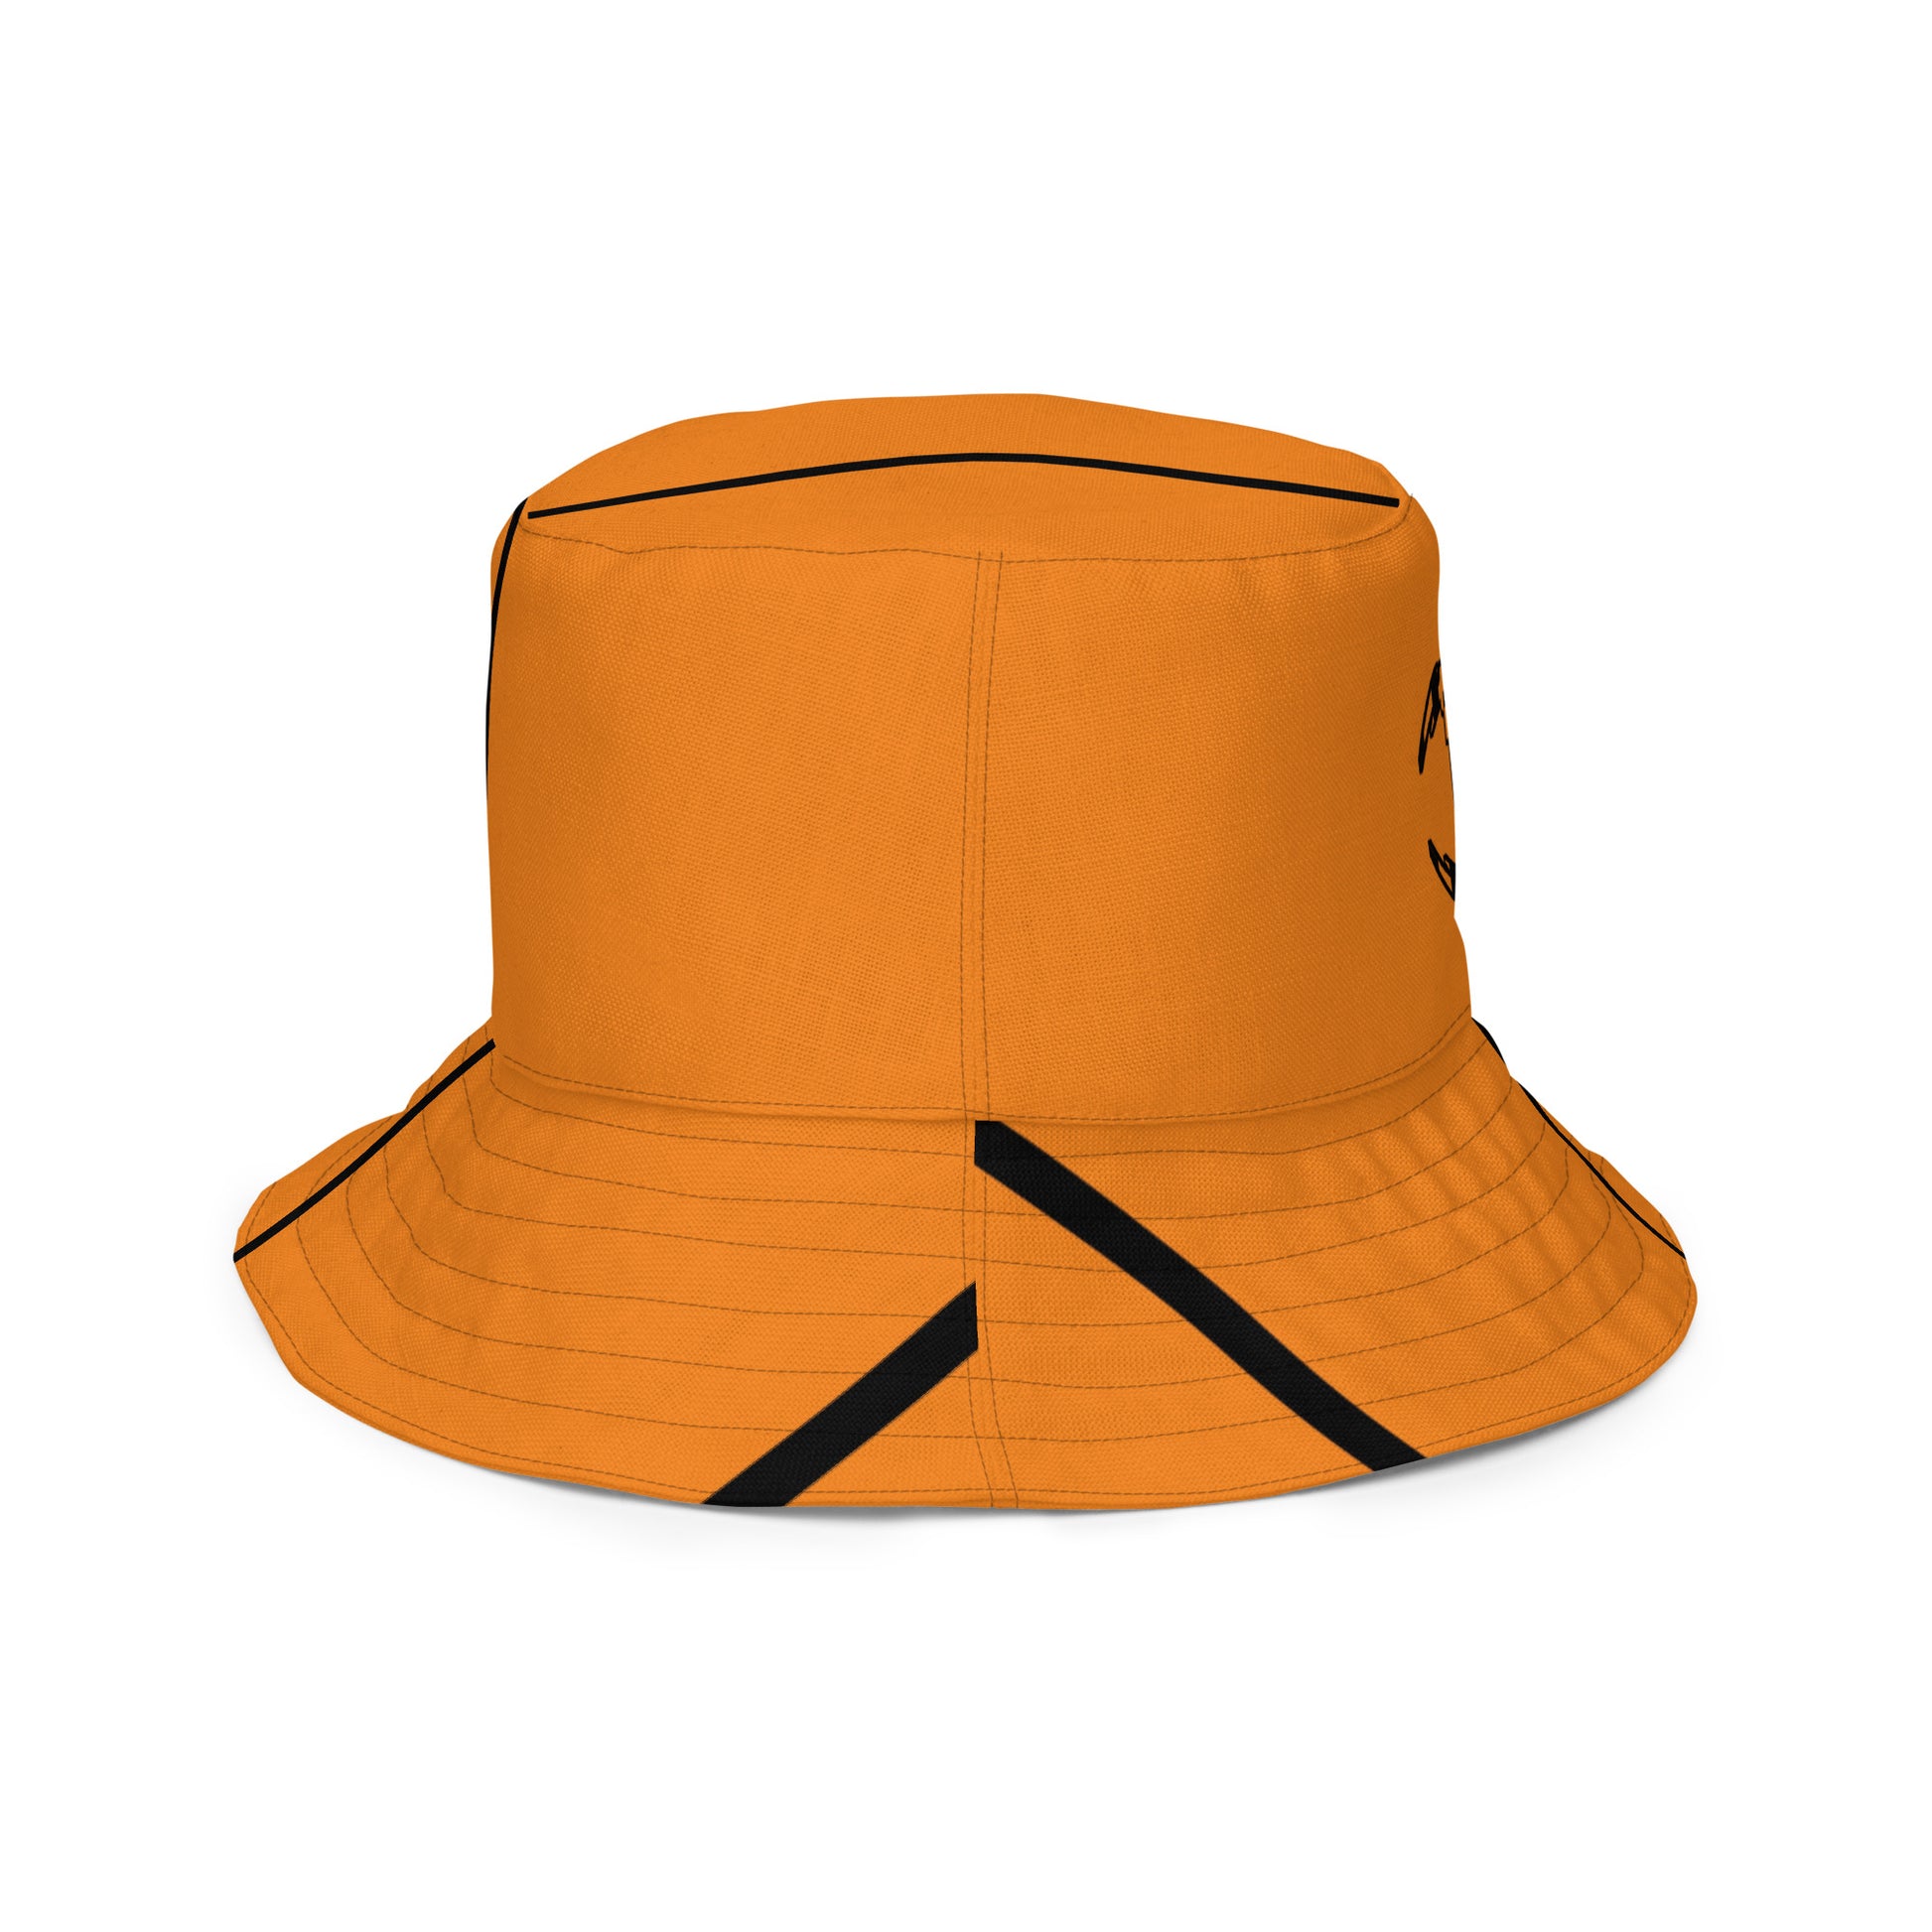 Bengals championship hat / B hat / Cincinnati Bengals Bucket Hat